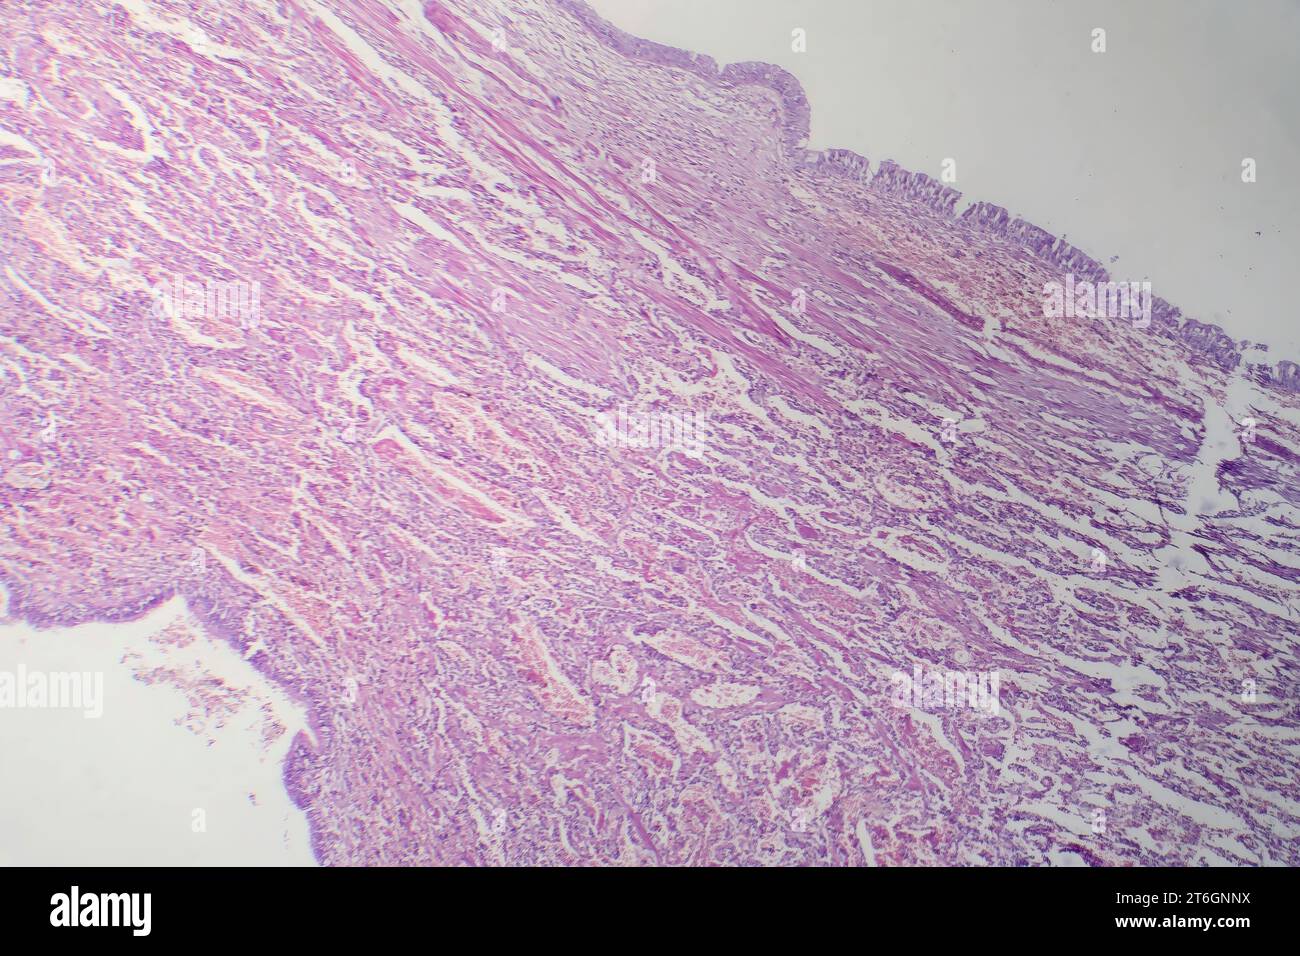 Fotomicrografia della polmonite virale, rivelando infiammazione e danno cellulare causato da un'infezione respiratoria virale. Foto Stock